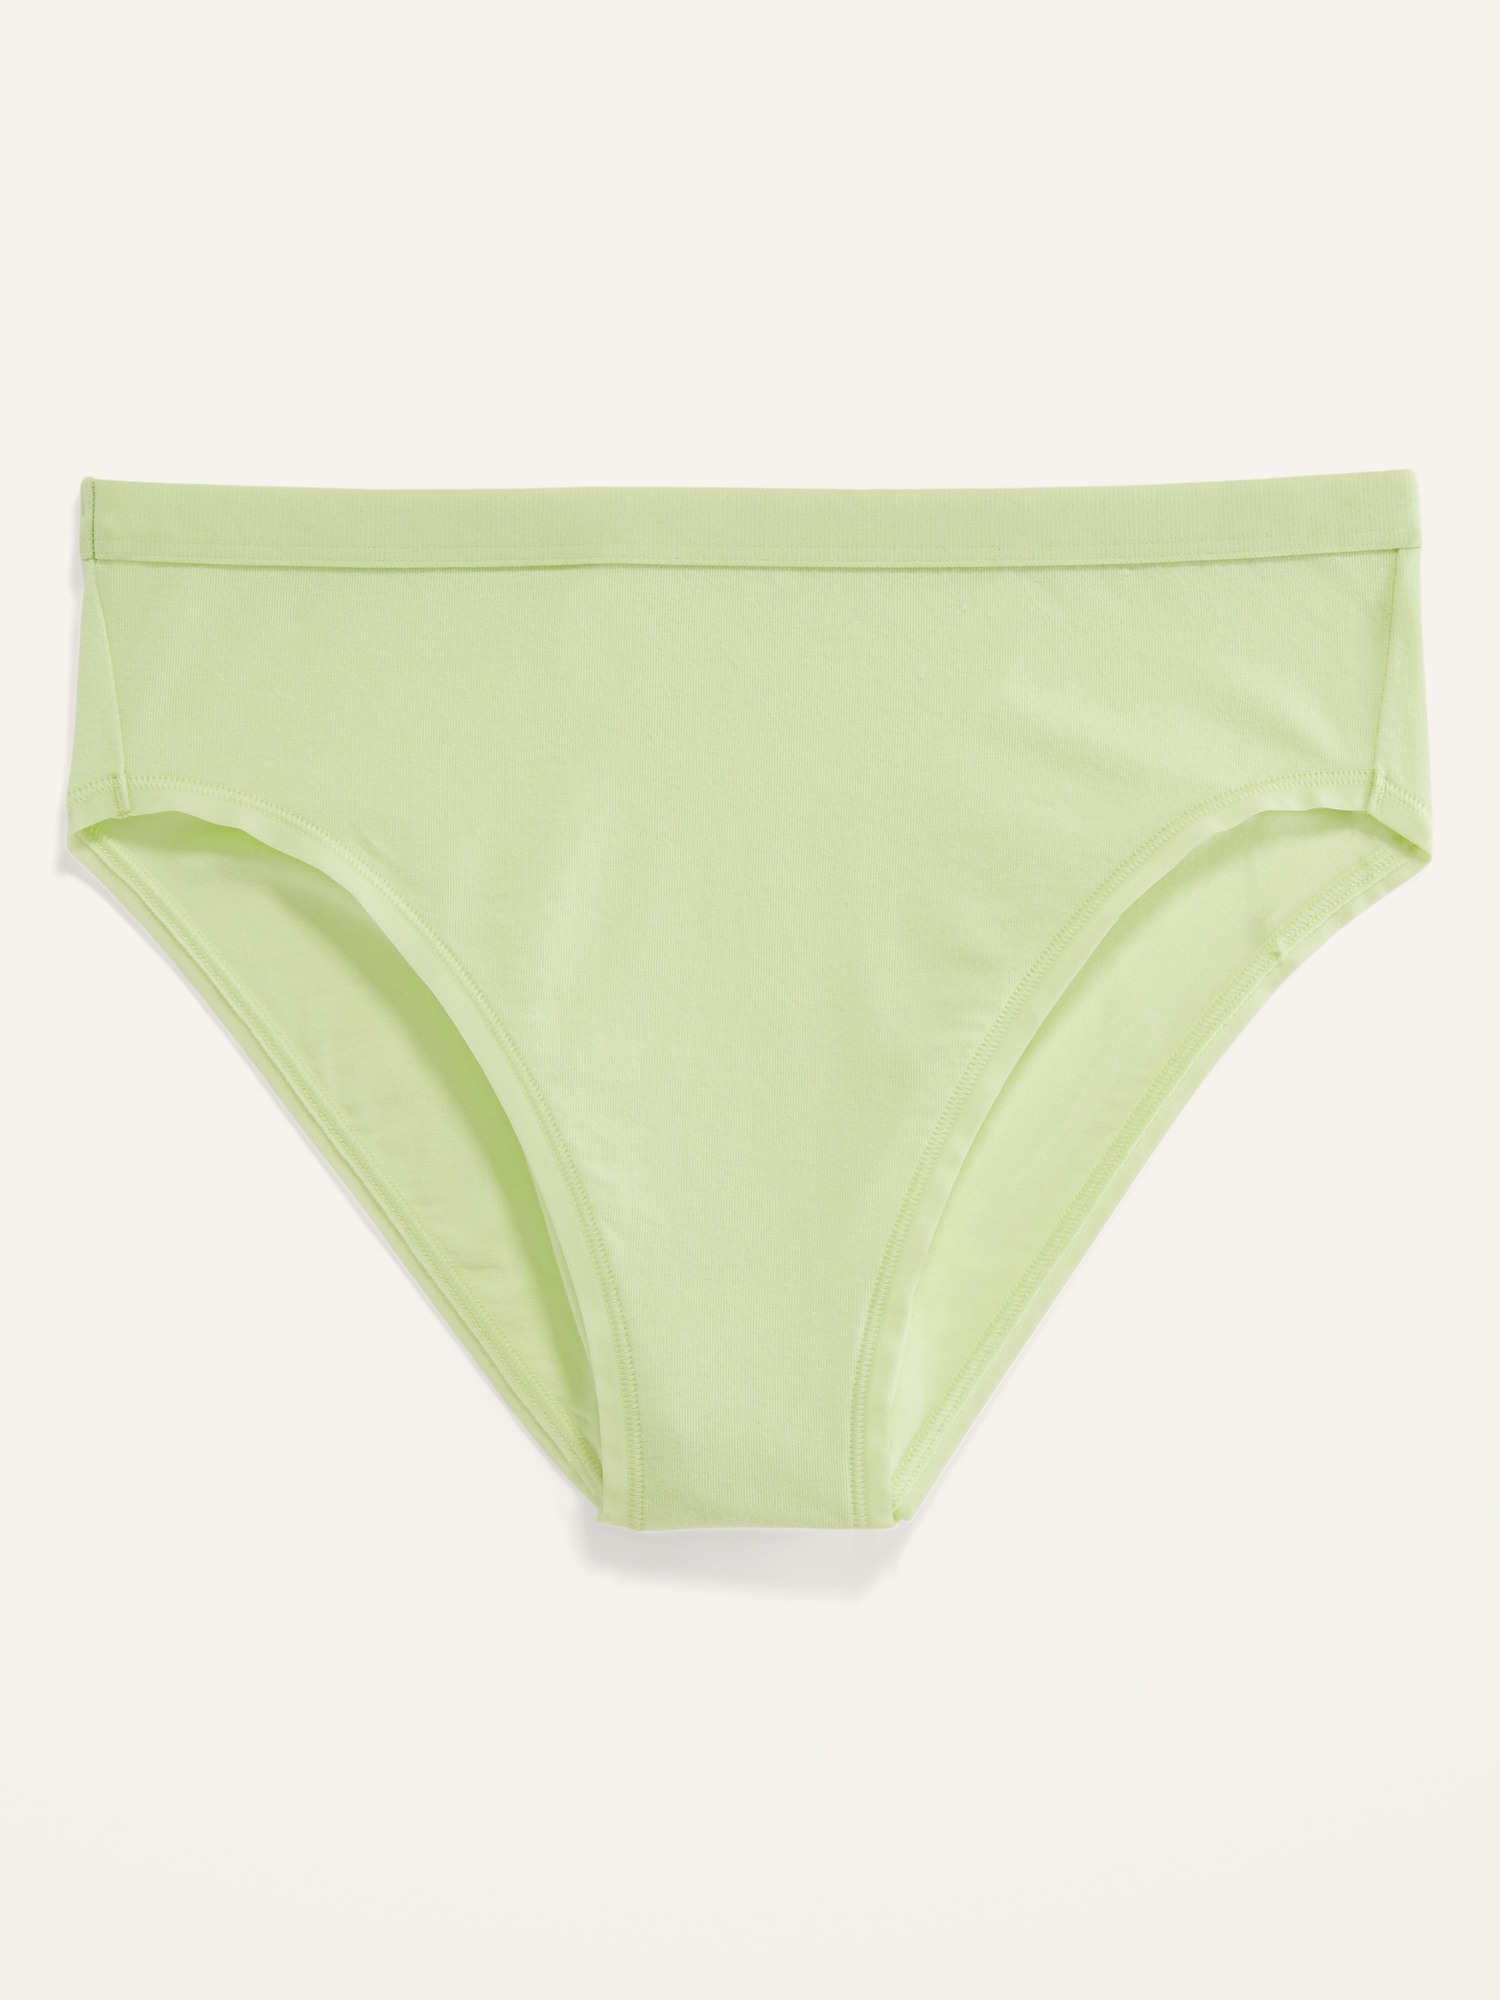 H&H Women's Cotton Bikini Briefs 5 Pack Green Light